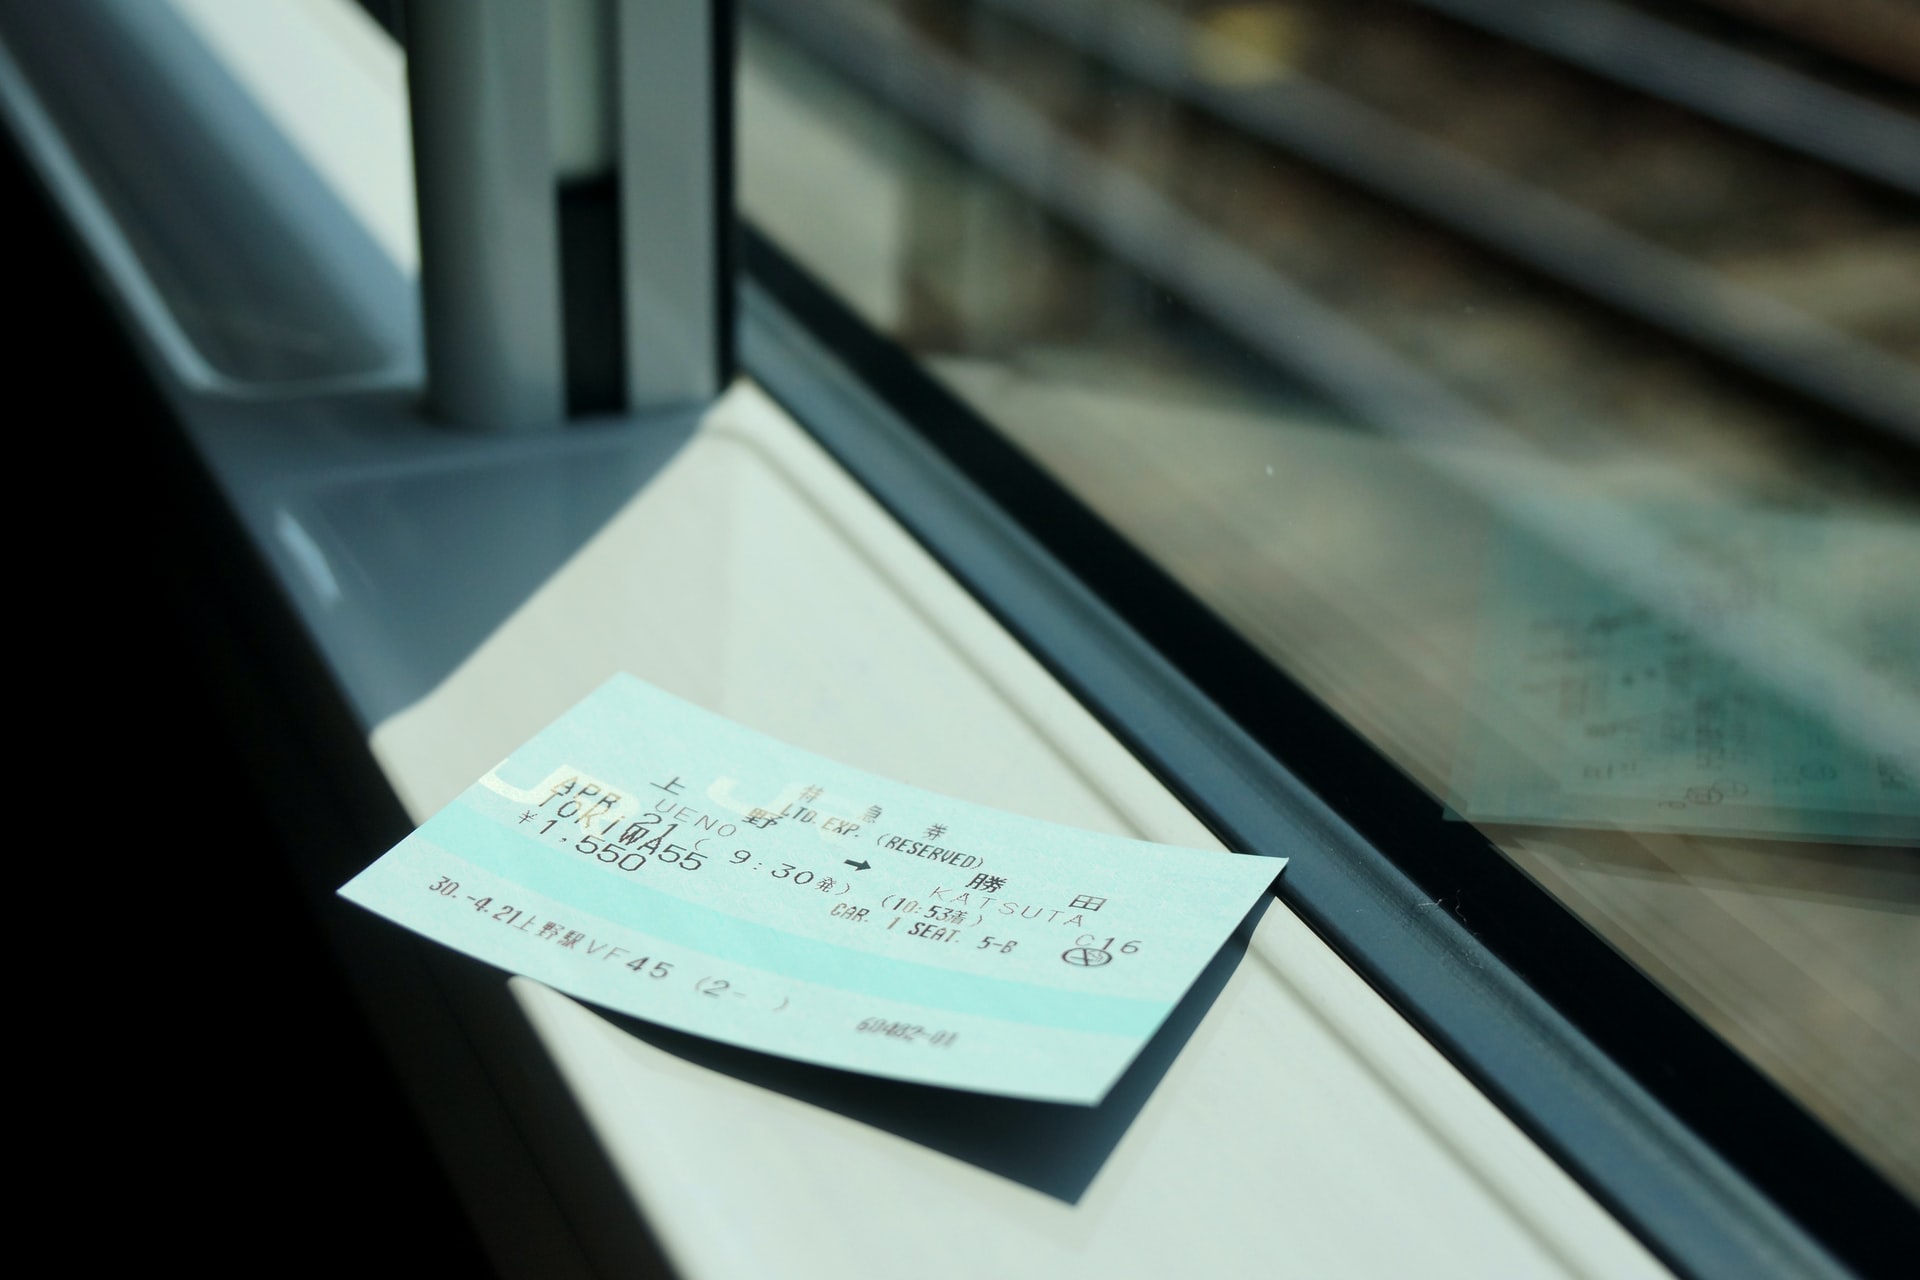 تذكرة قطار تتسبب في القبض على مرتكب اعتداء جنسي في هانوفر